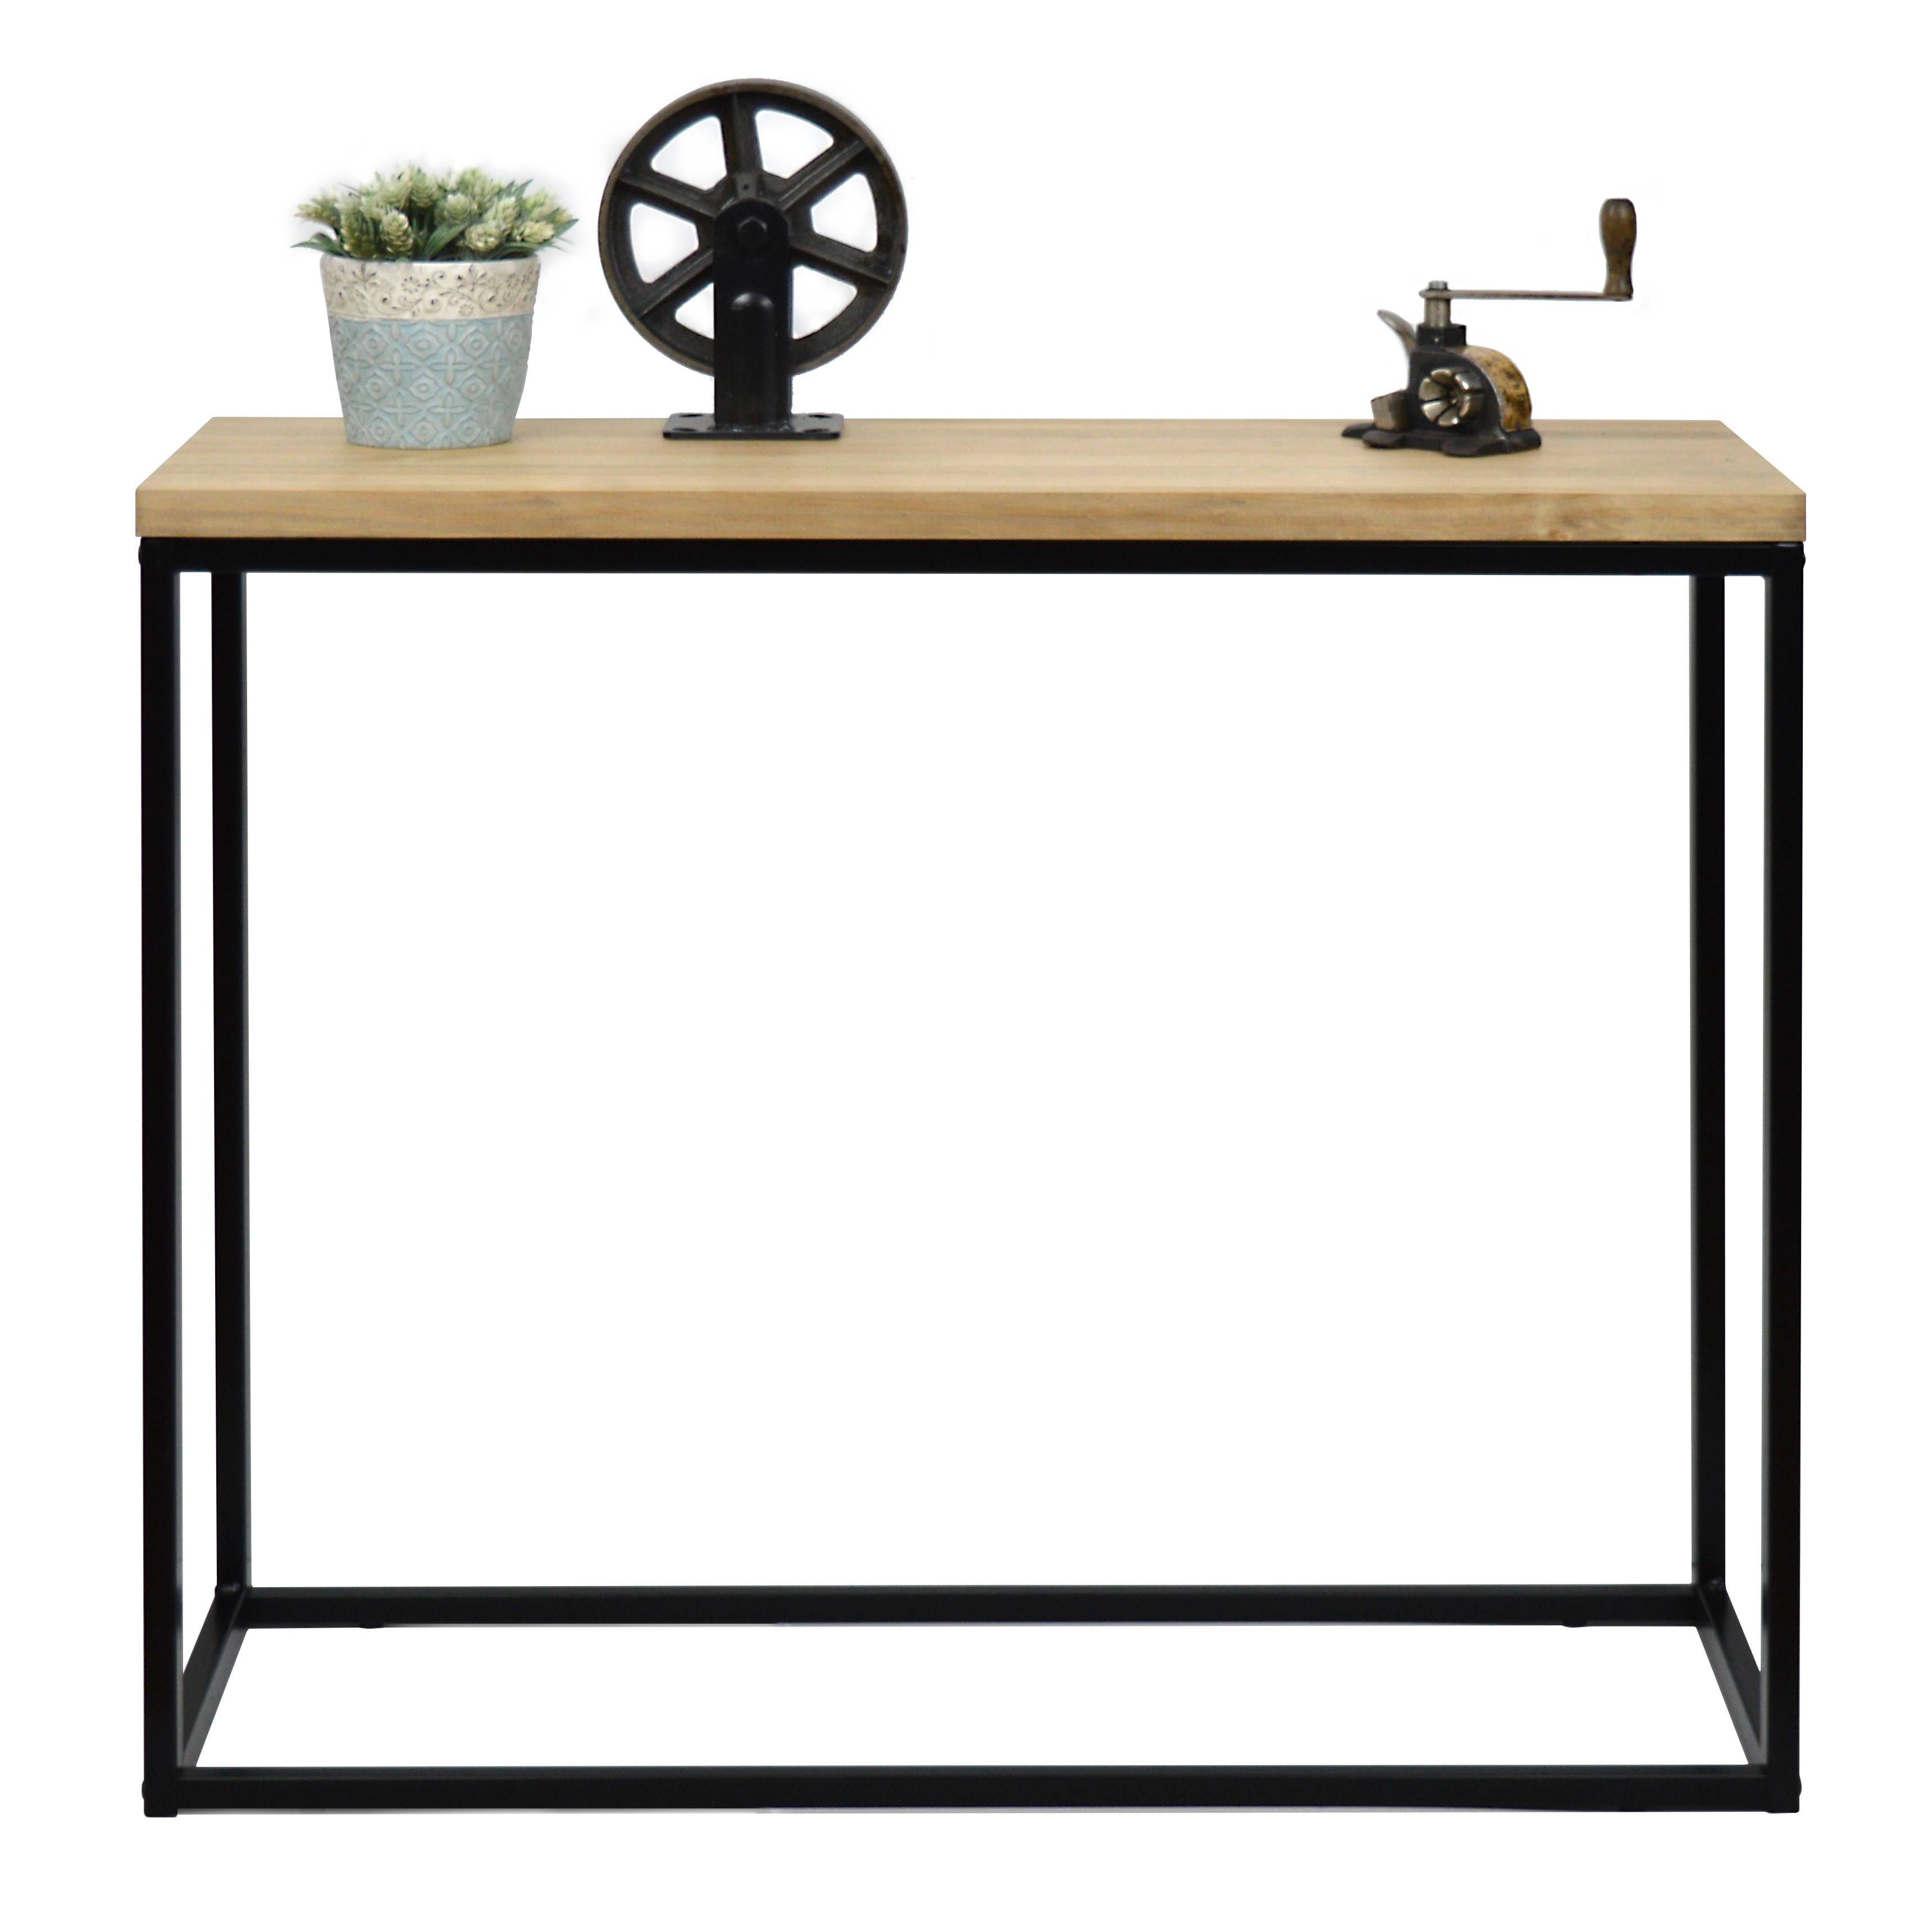 Table d'entree – Console Icub - industriel vintage bois et métal 100x35 cm. Noir